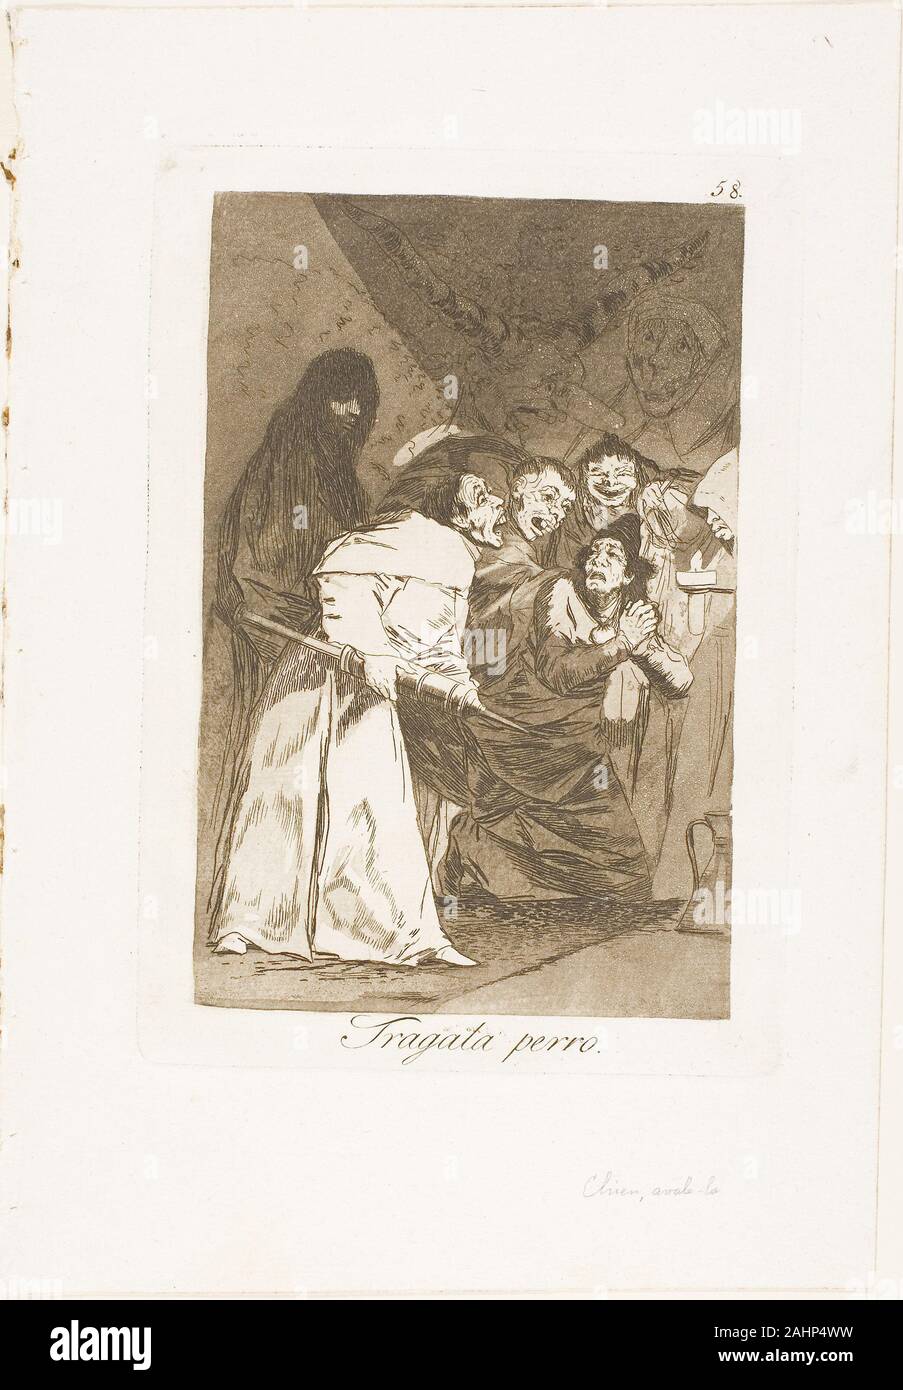 Francisco José de Goya y Lucientes. Es Schlucken, Hund, Platte 58 aus Los Caprichos. 1797 - 1799. Spanien. Radierung und Aquatinta auf Elfenbein Bütten Stockfoto